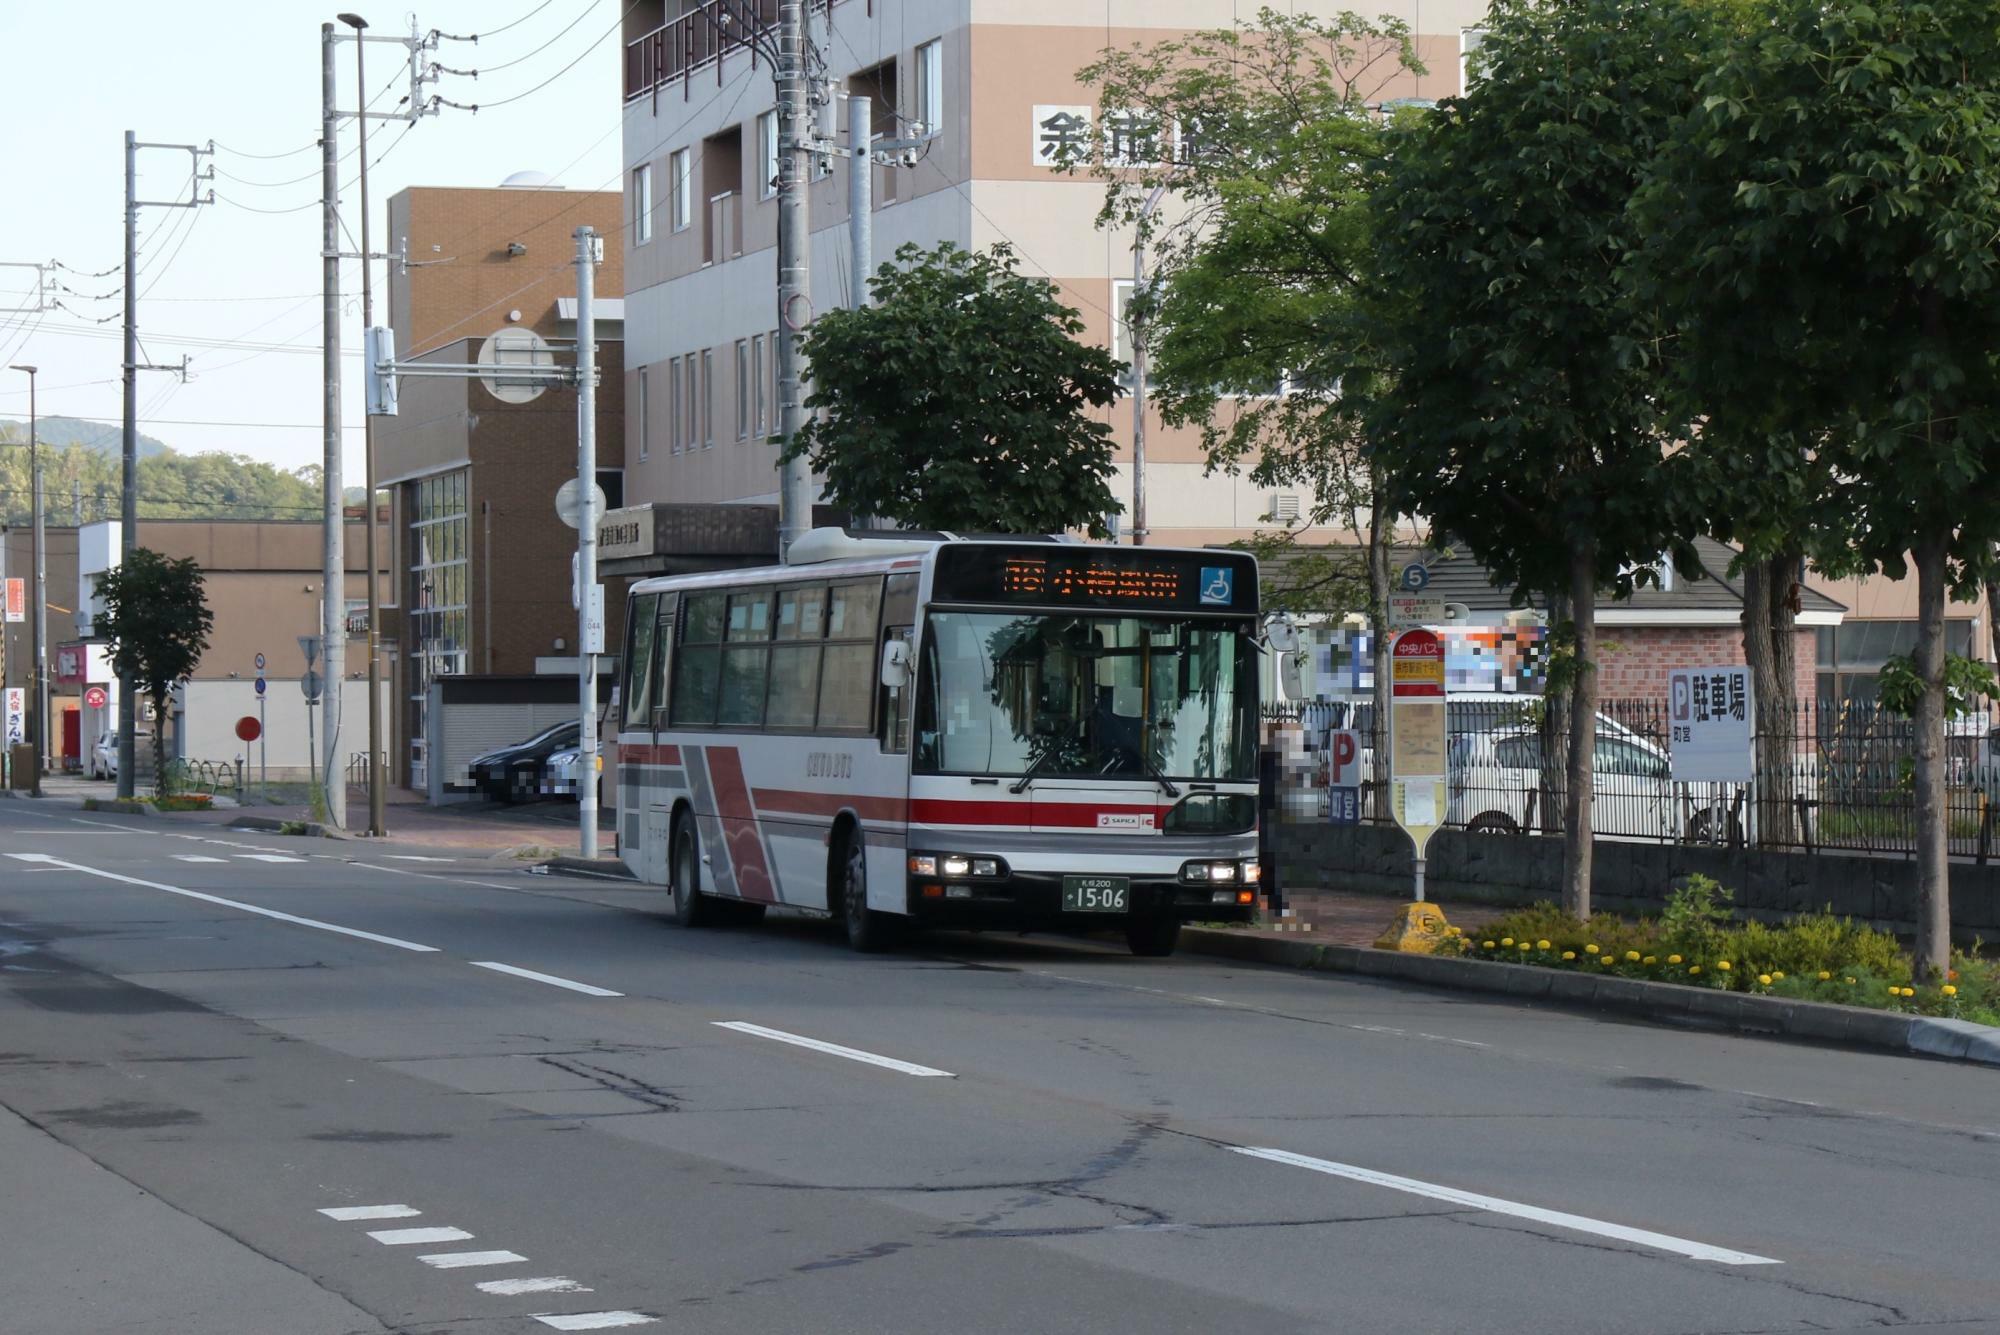 ニッカウヰスキー側歩道から5番バス停に来た路線バスを撮影